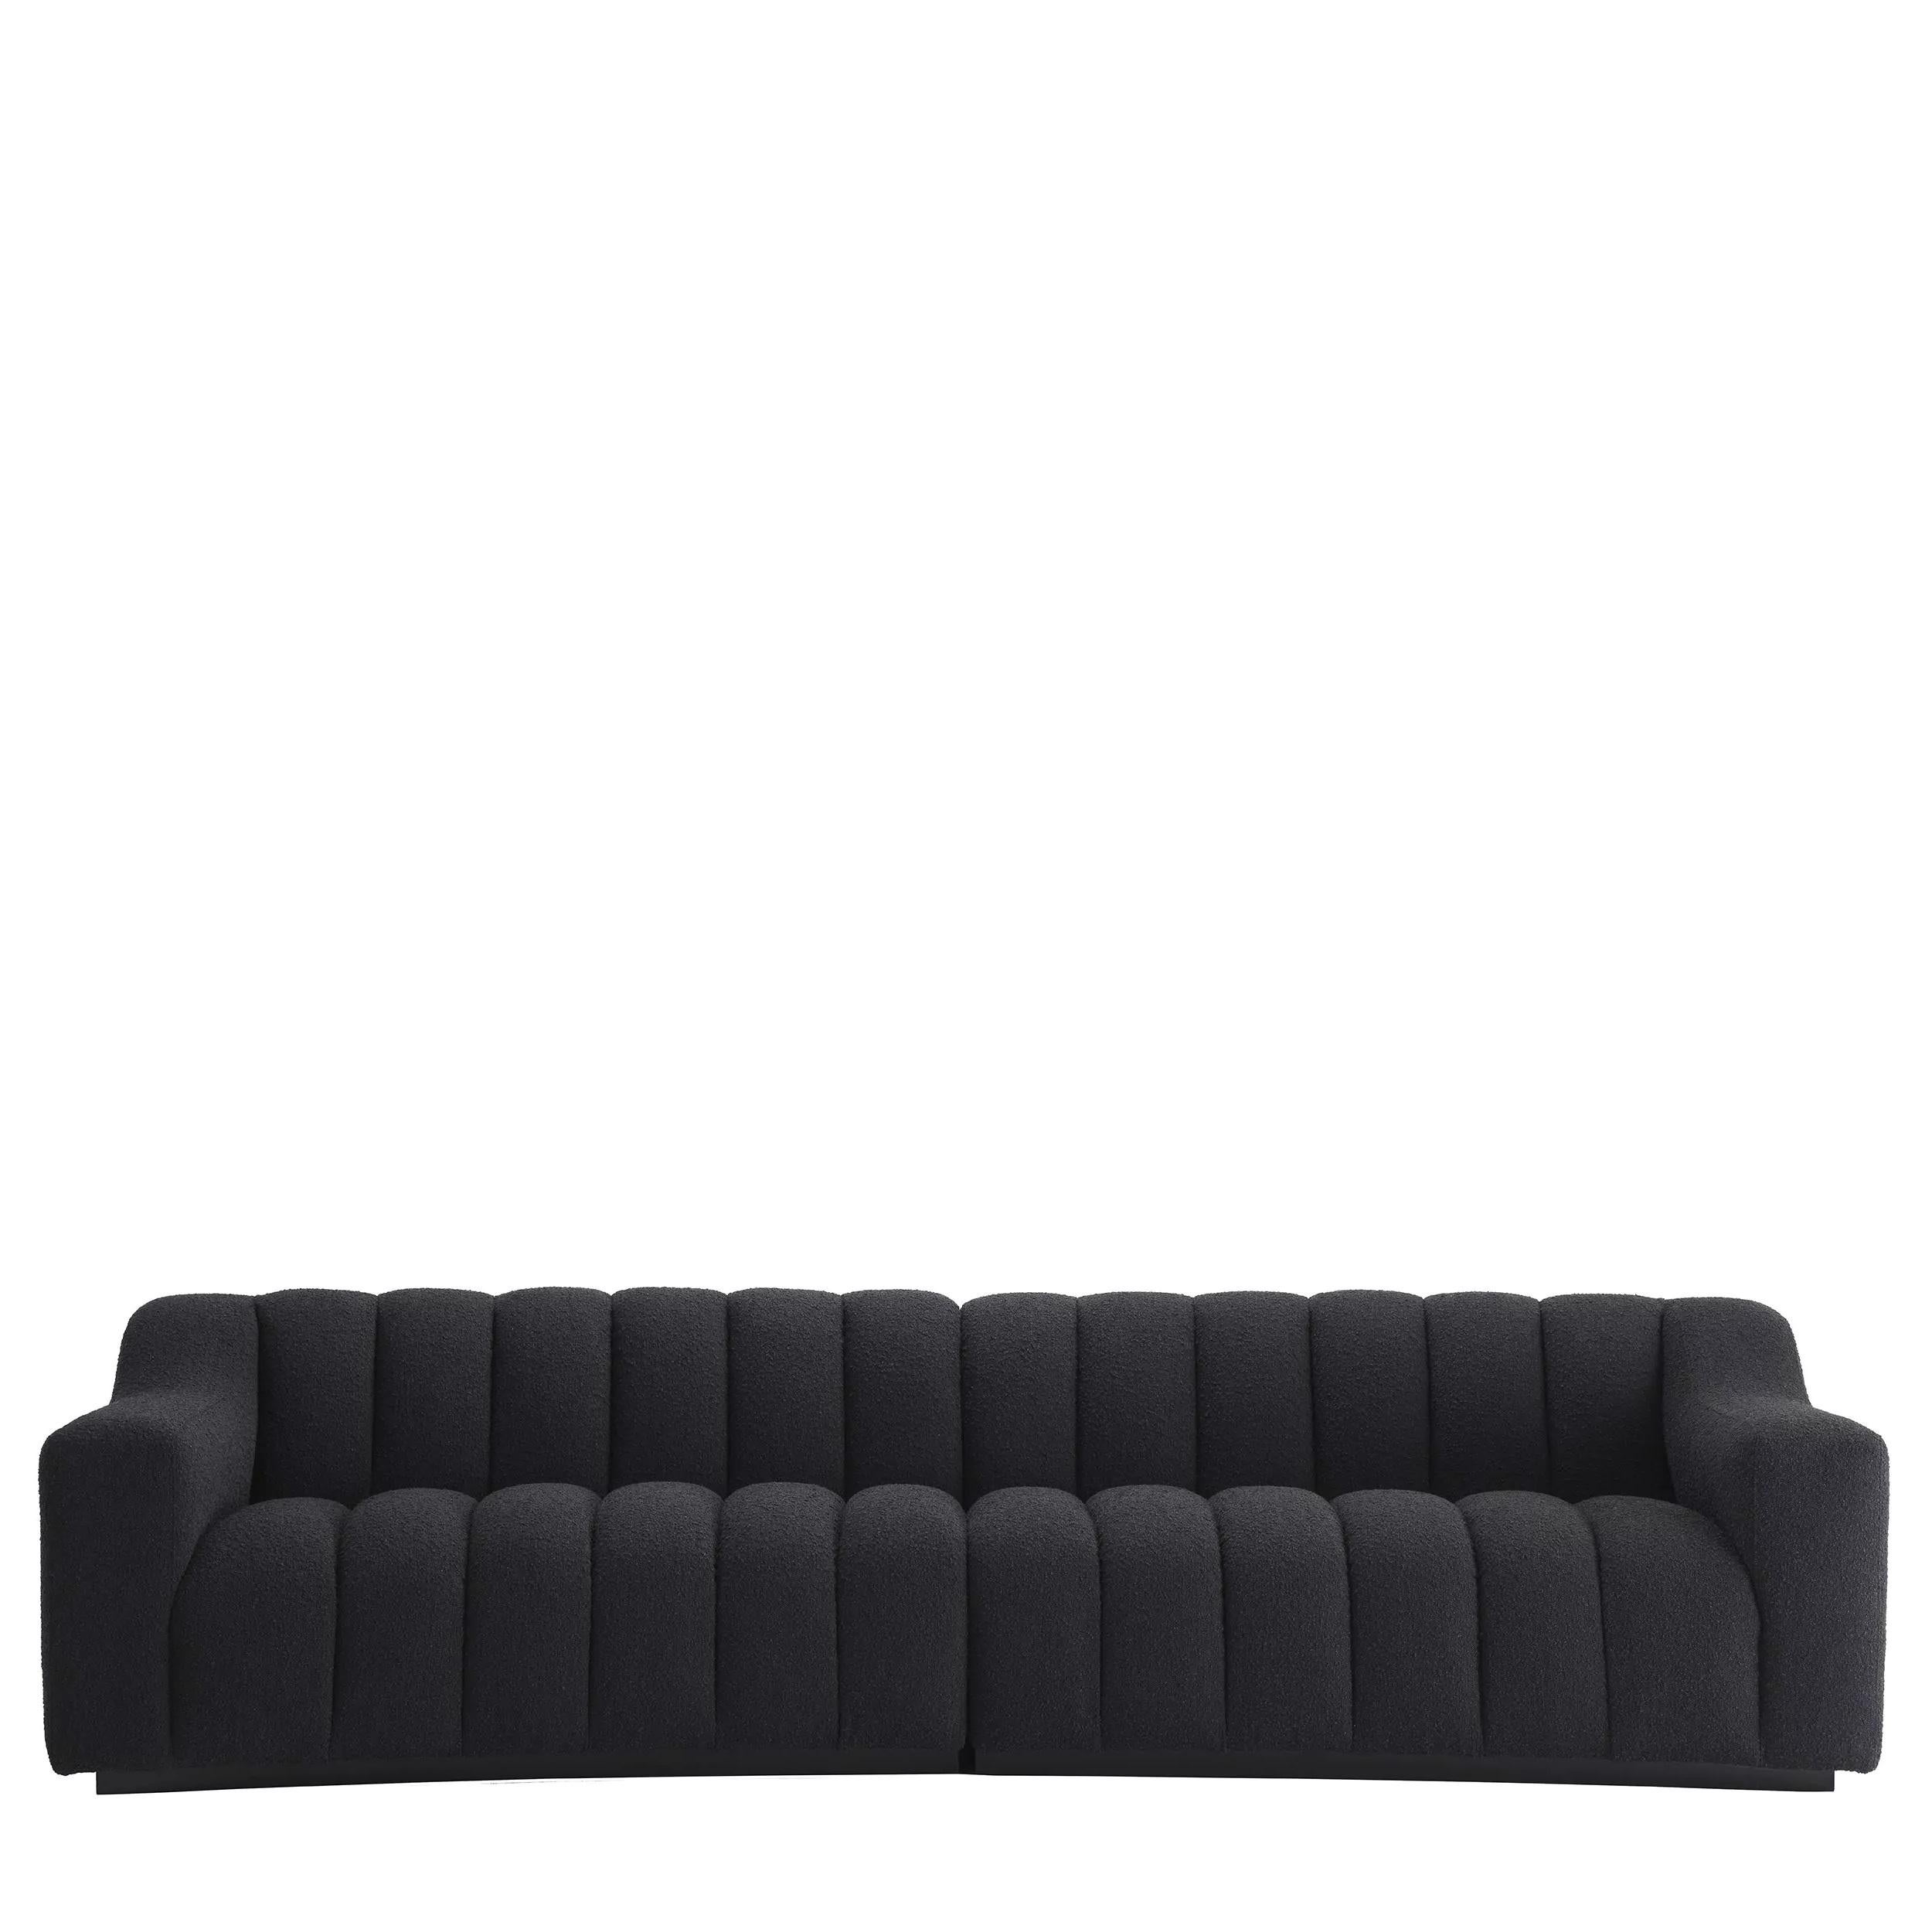 Skandinavisches Design und Vintage-Stil schwarze Holzfüße und schwarzer Bouclé-Stoff gekrümmt gepolstert großes Sofa.